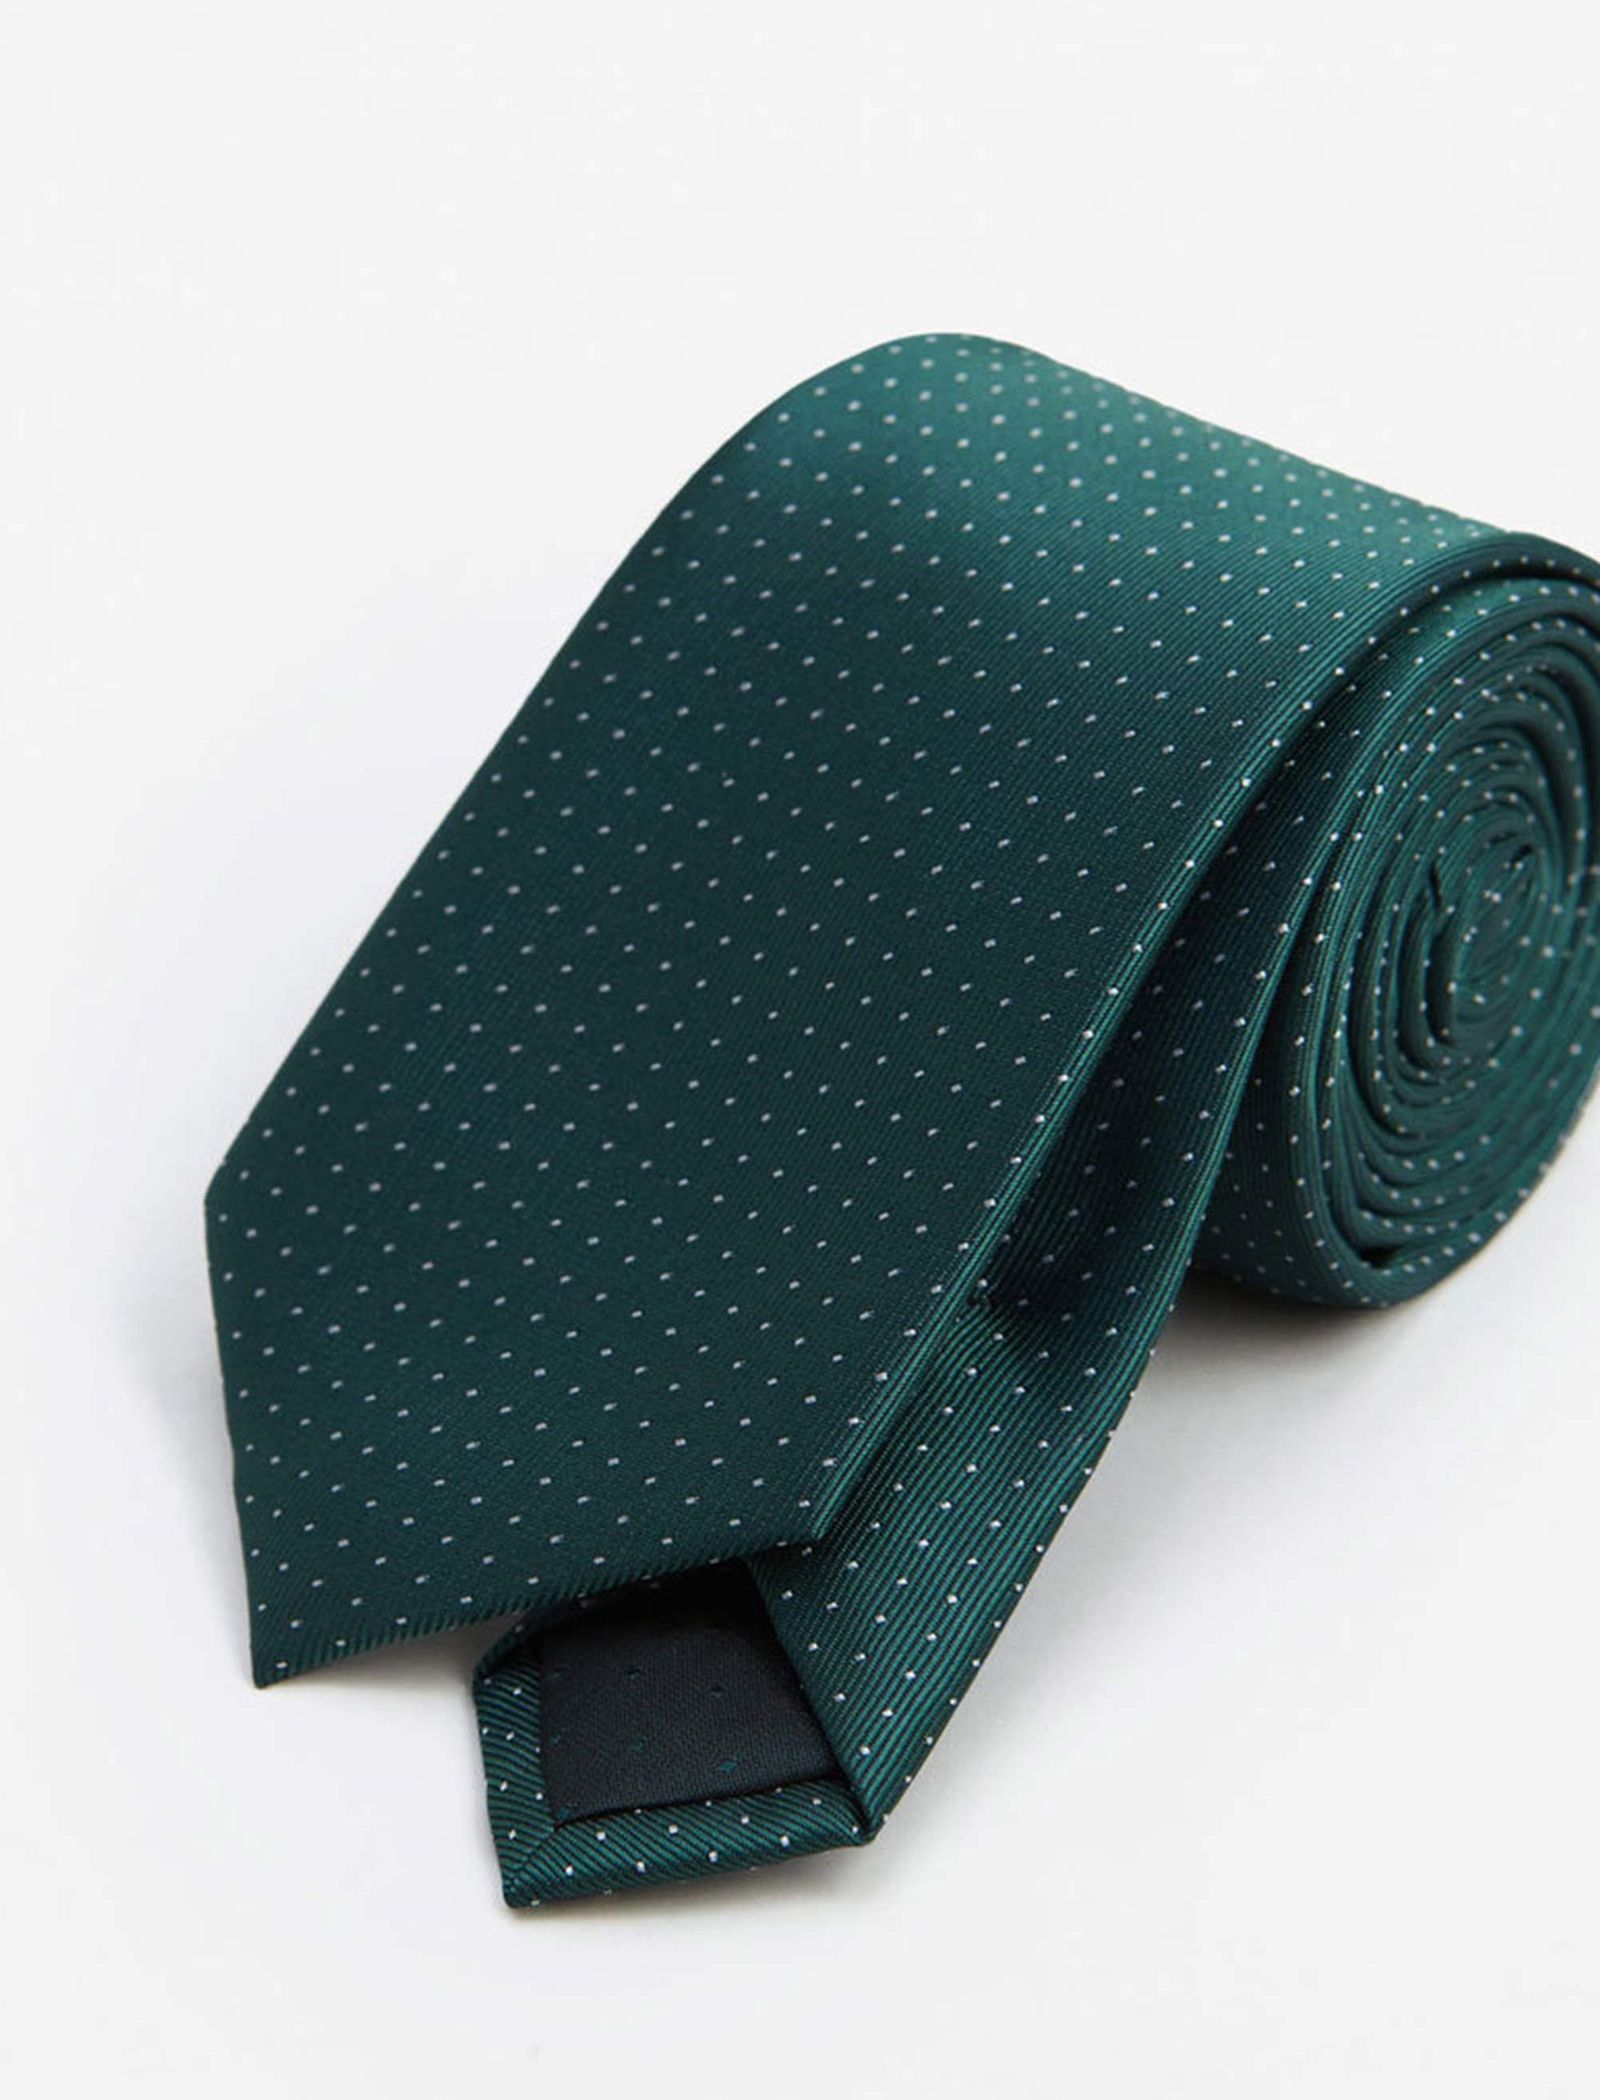 کراوات طرح دار مردانه - مانگو - سبز - 3